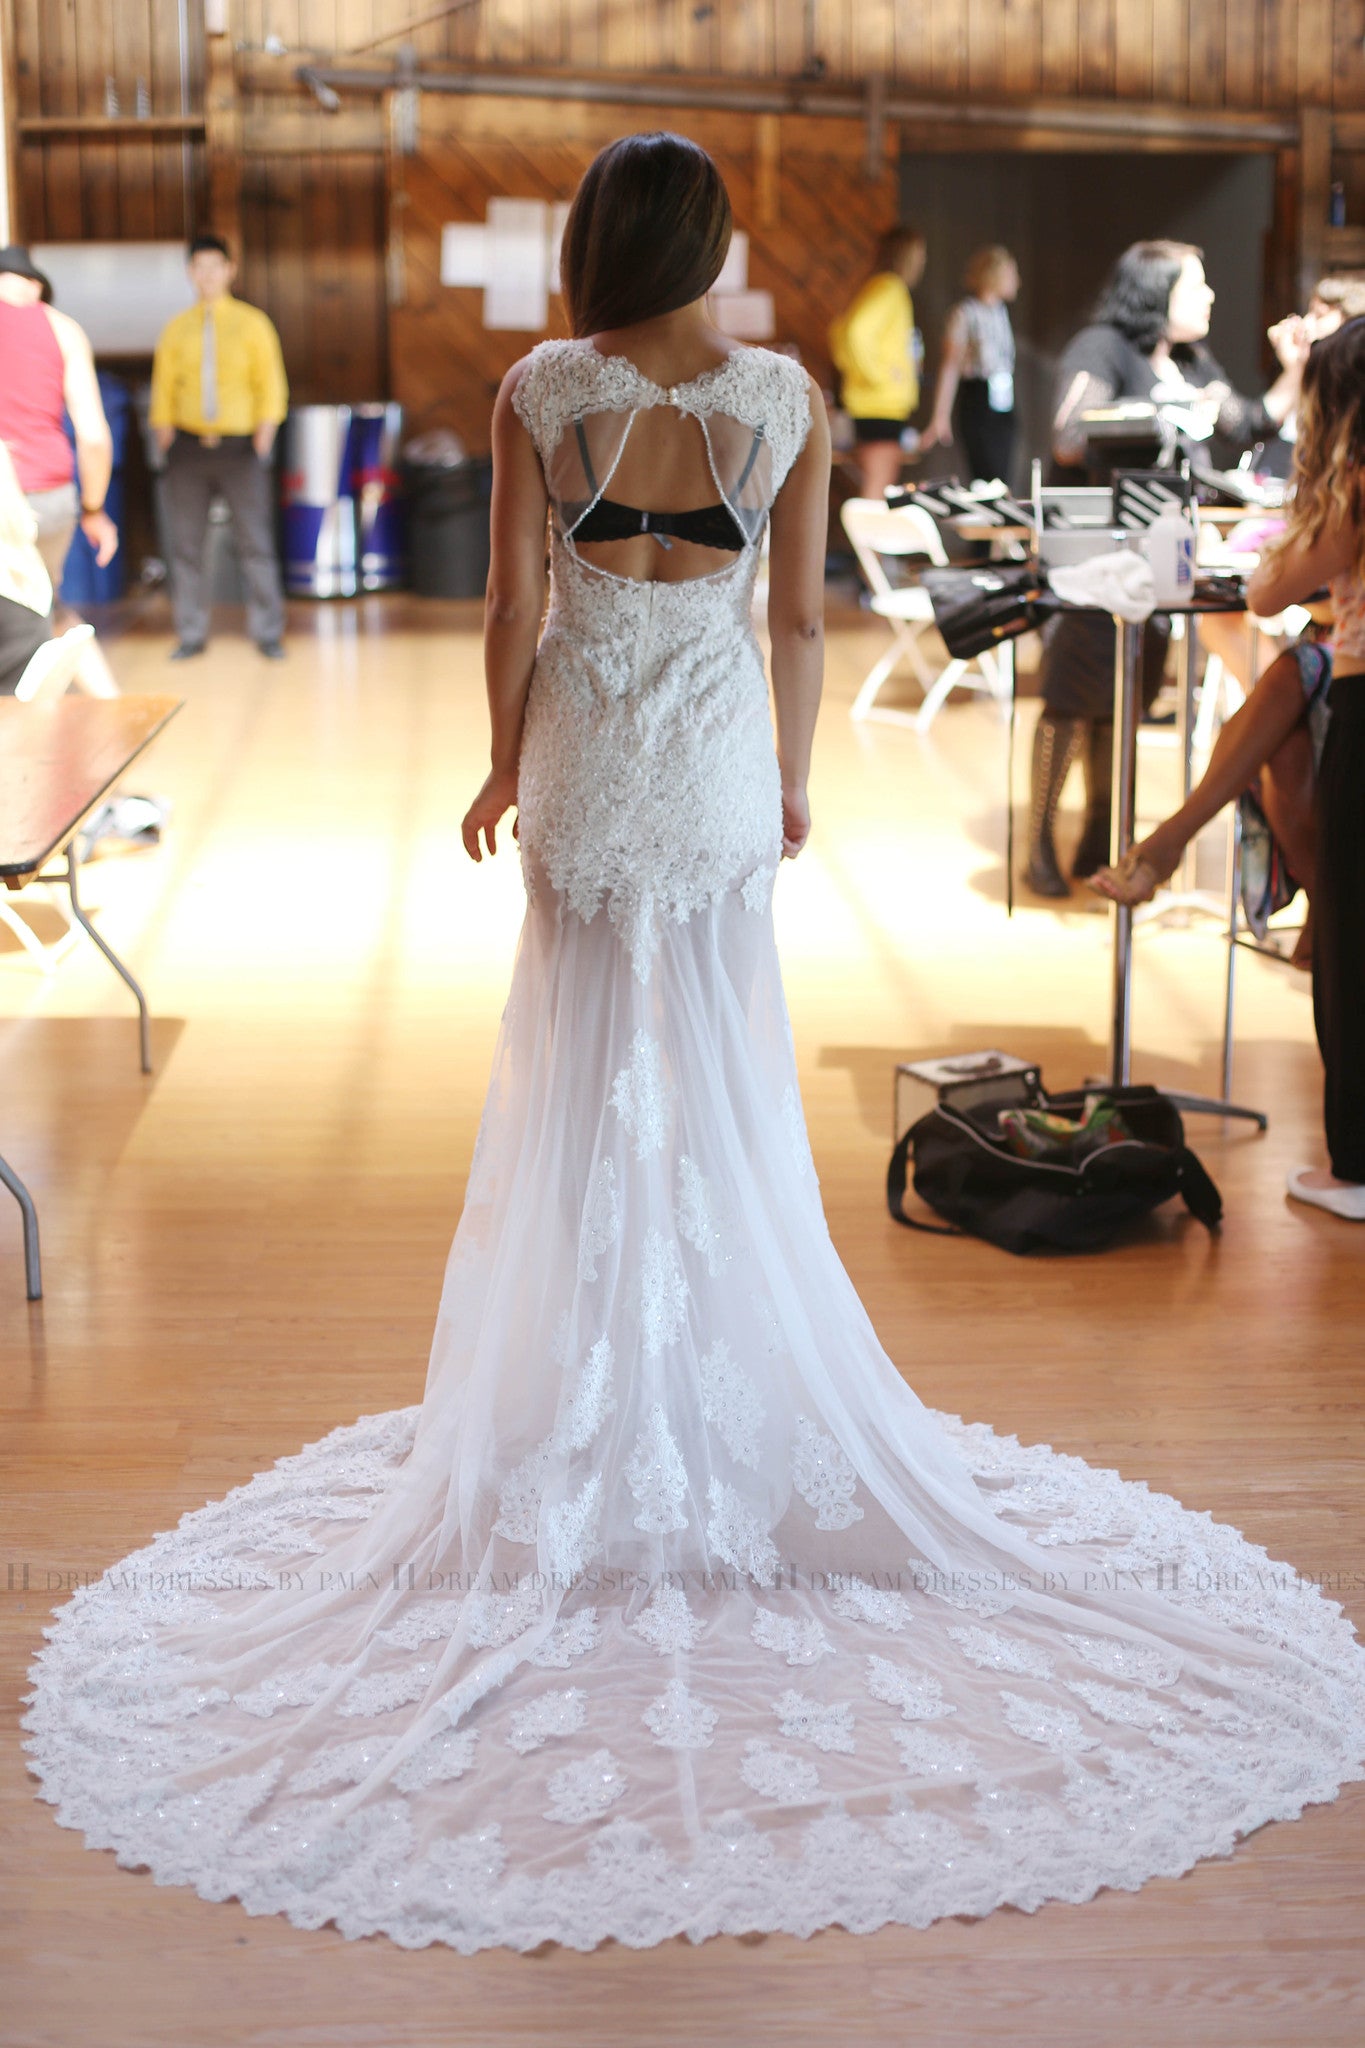 Midsize Wedding Dress Mermaid - Shop on Pinterest